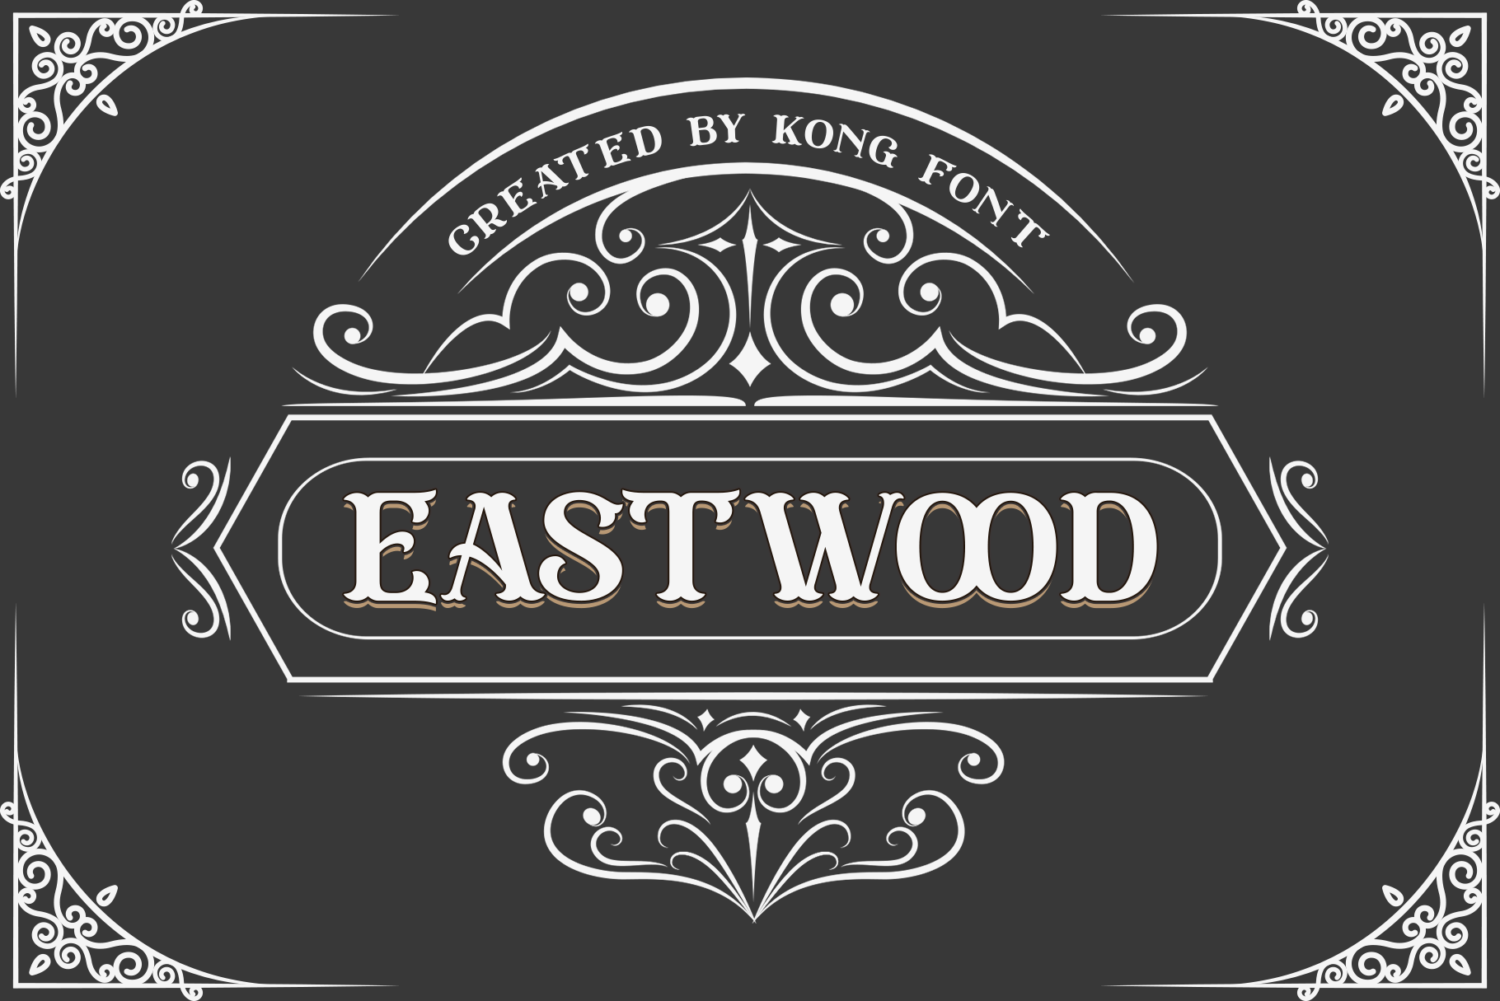 Eastwood Free Font